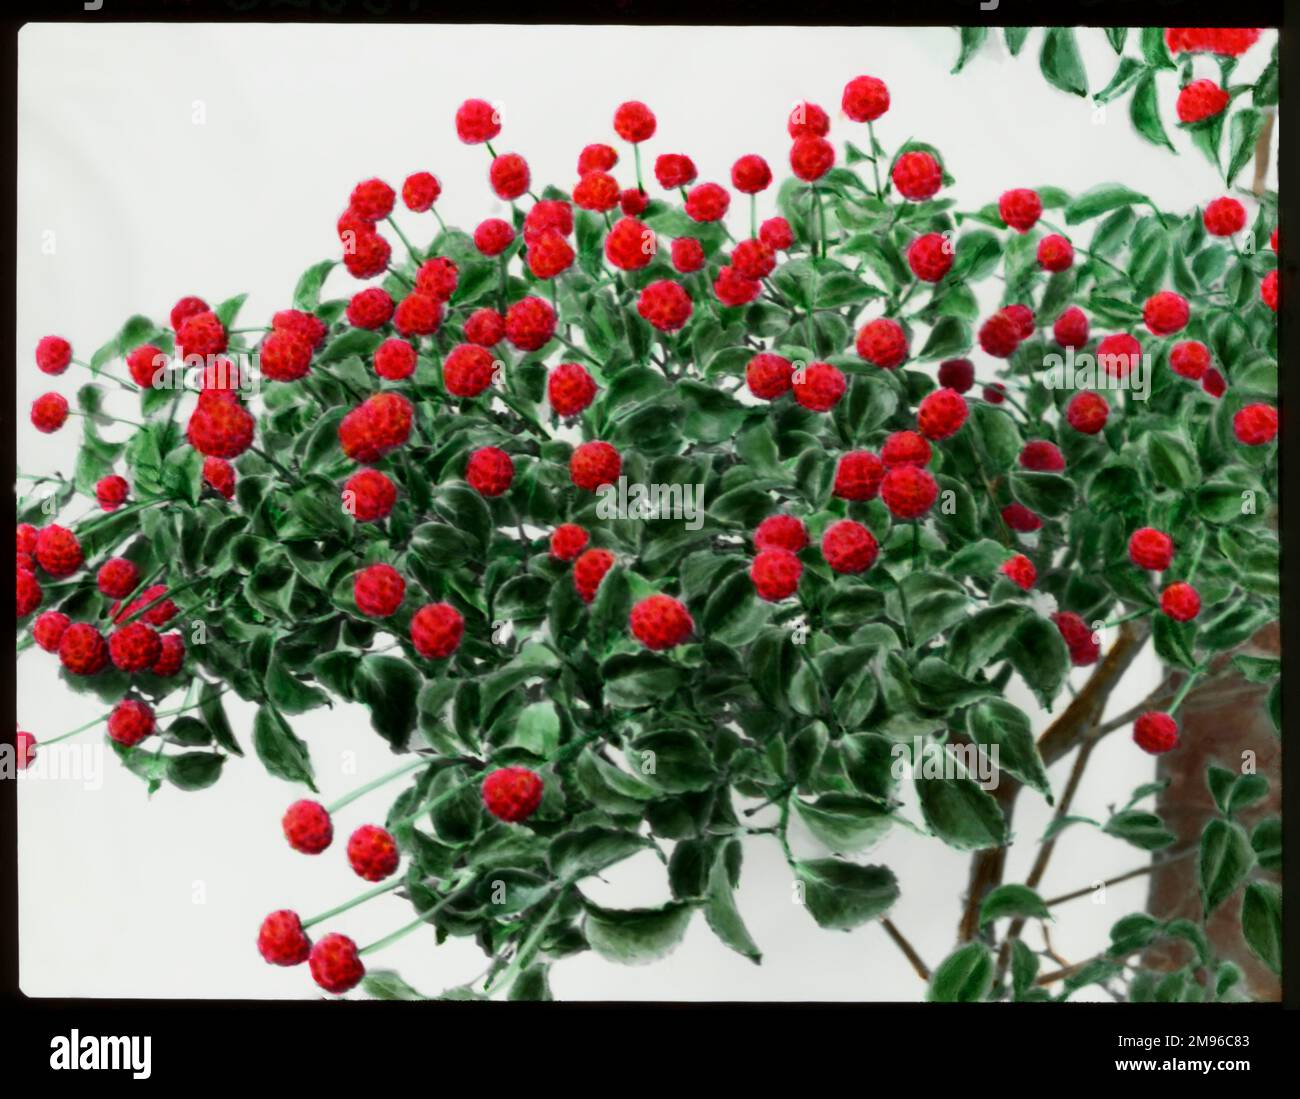 Cornus Kousa oder Benthamidia Kousa (japanischer Blumenhund), ein harter Strauch oder kleiner Baum aus Japan und Korea, der Familie der Cornaceae. Hier sehen Sie leuchtend rote Beeren, die essbar sind. Stockfoto